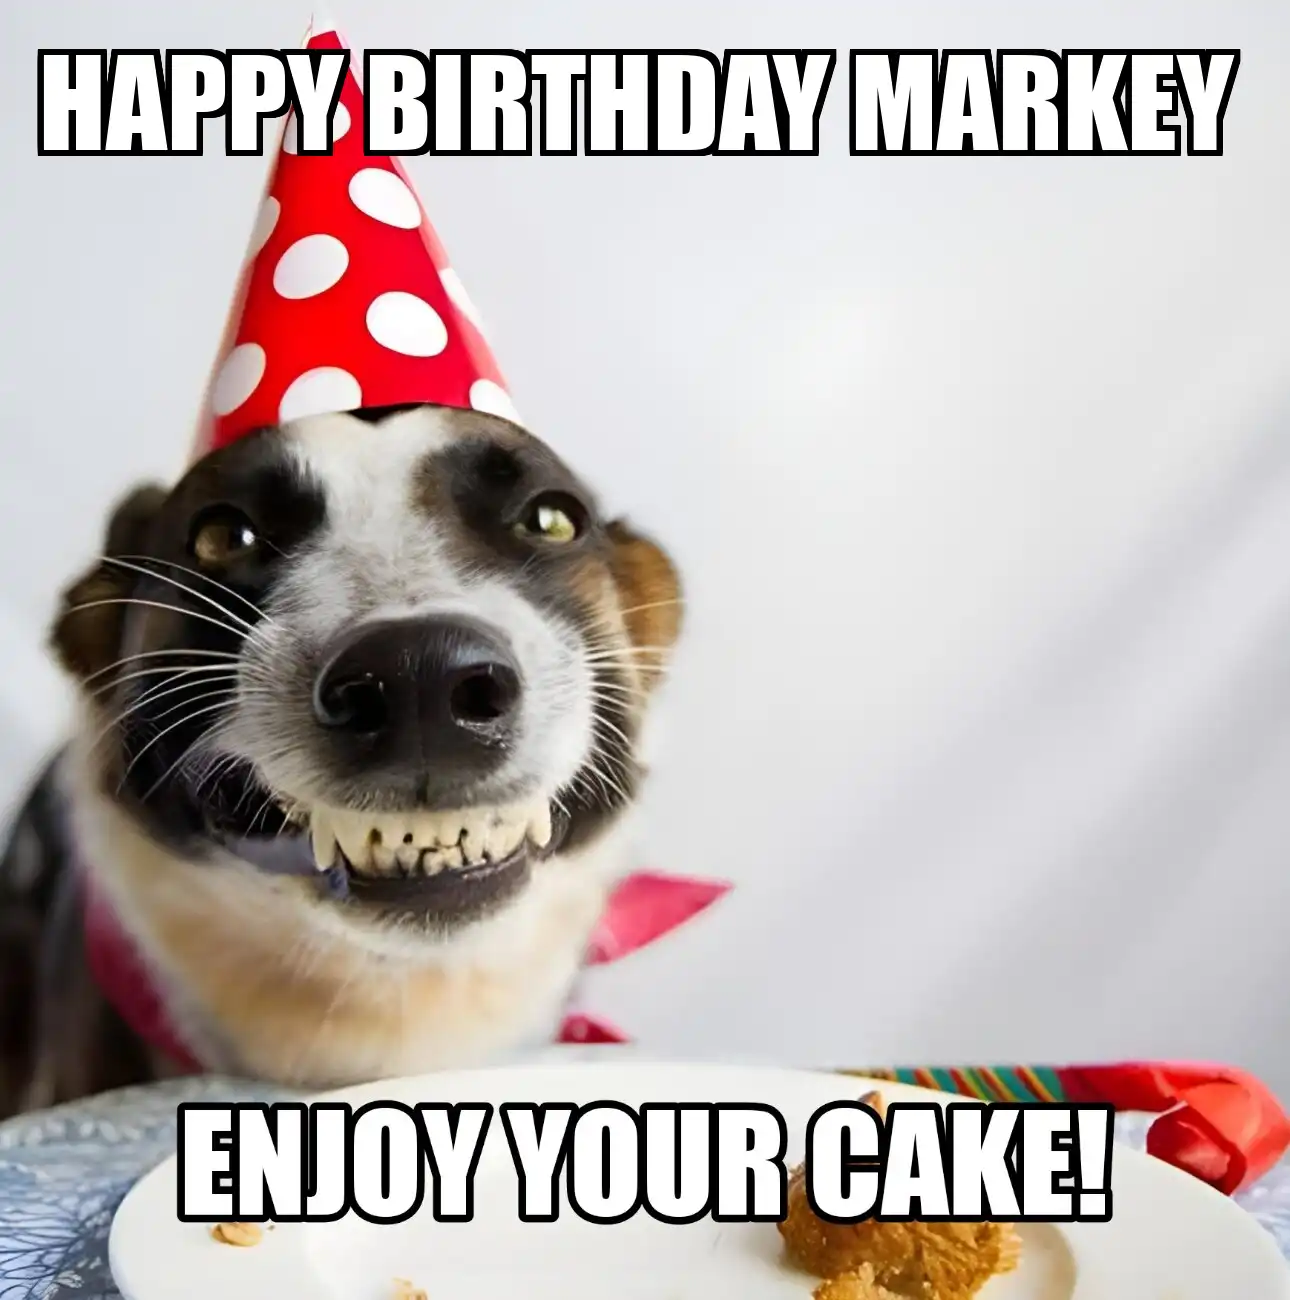 Happy Birthday Markey Enjoy Your Cake Dog Meme